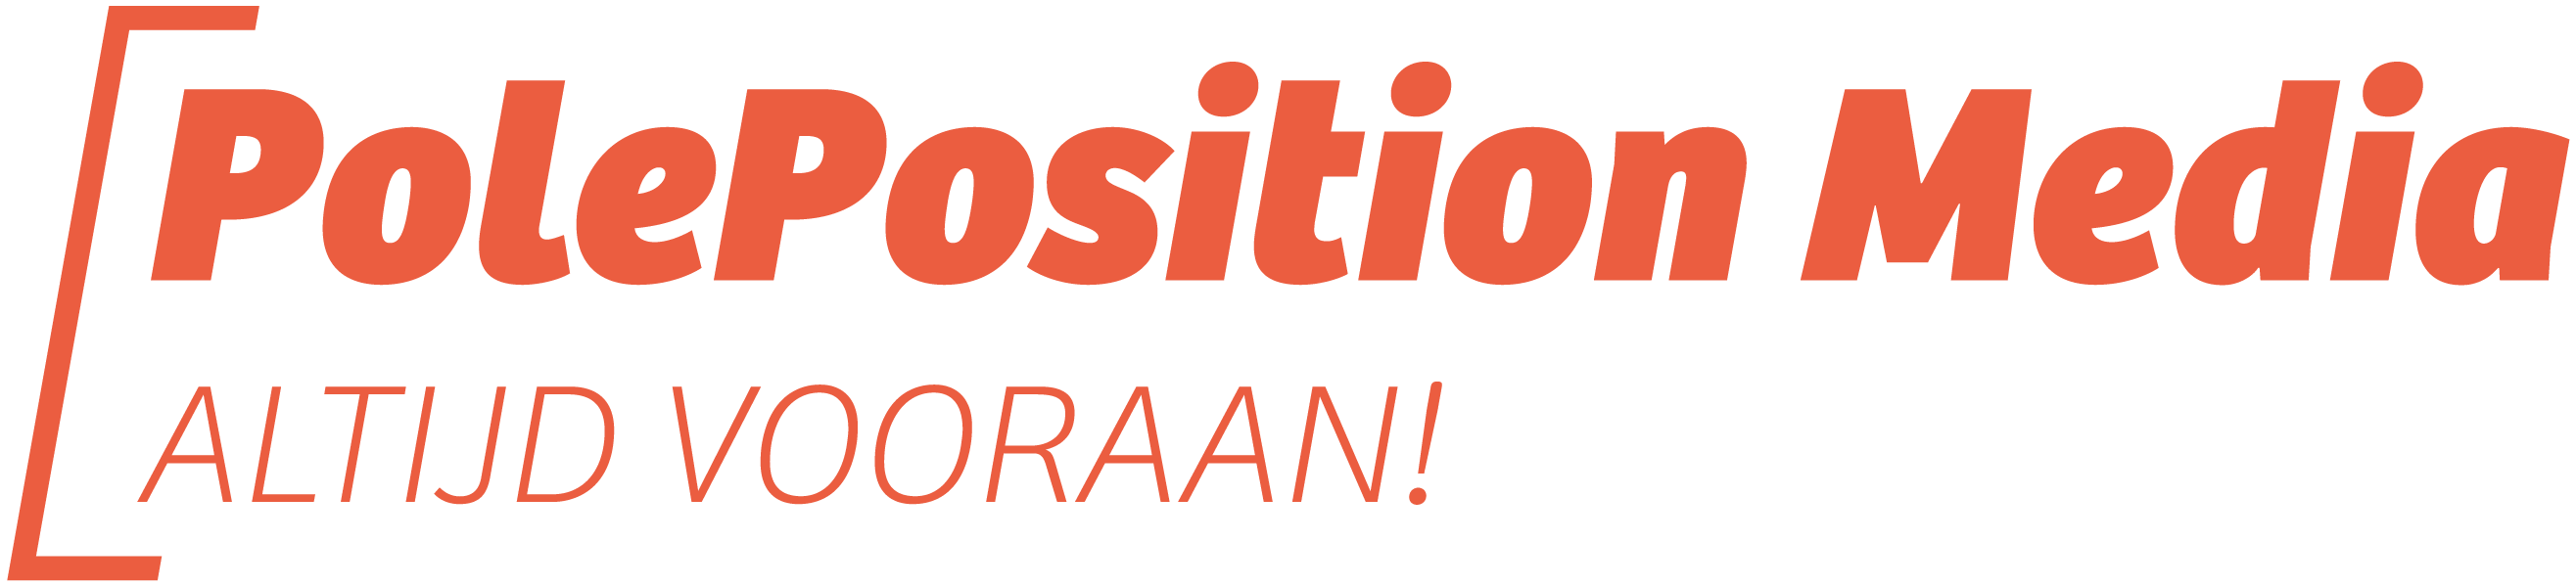 PolePosition Media Logo